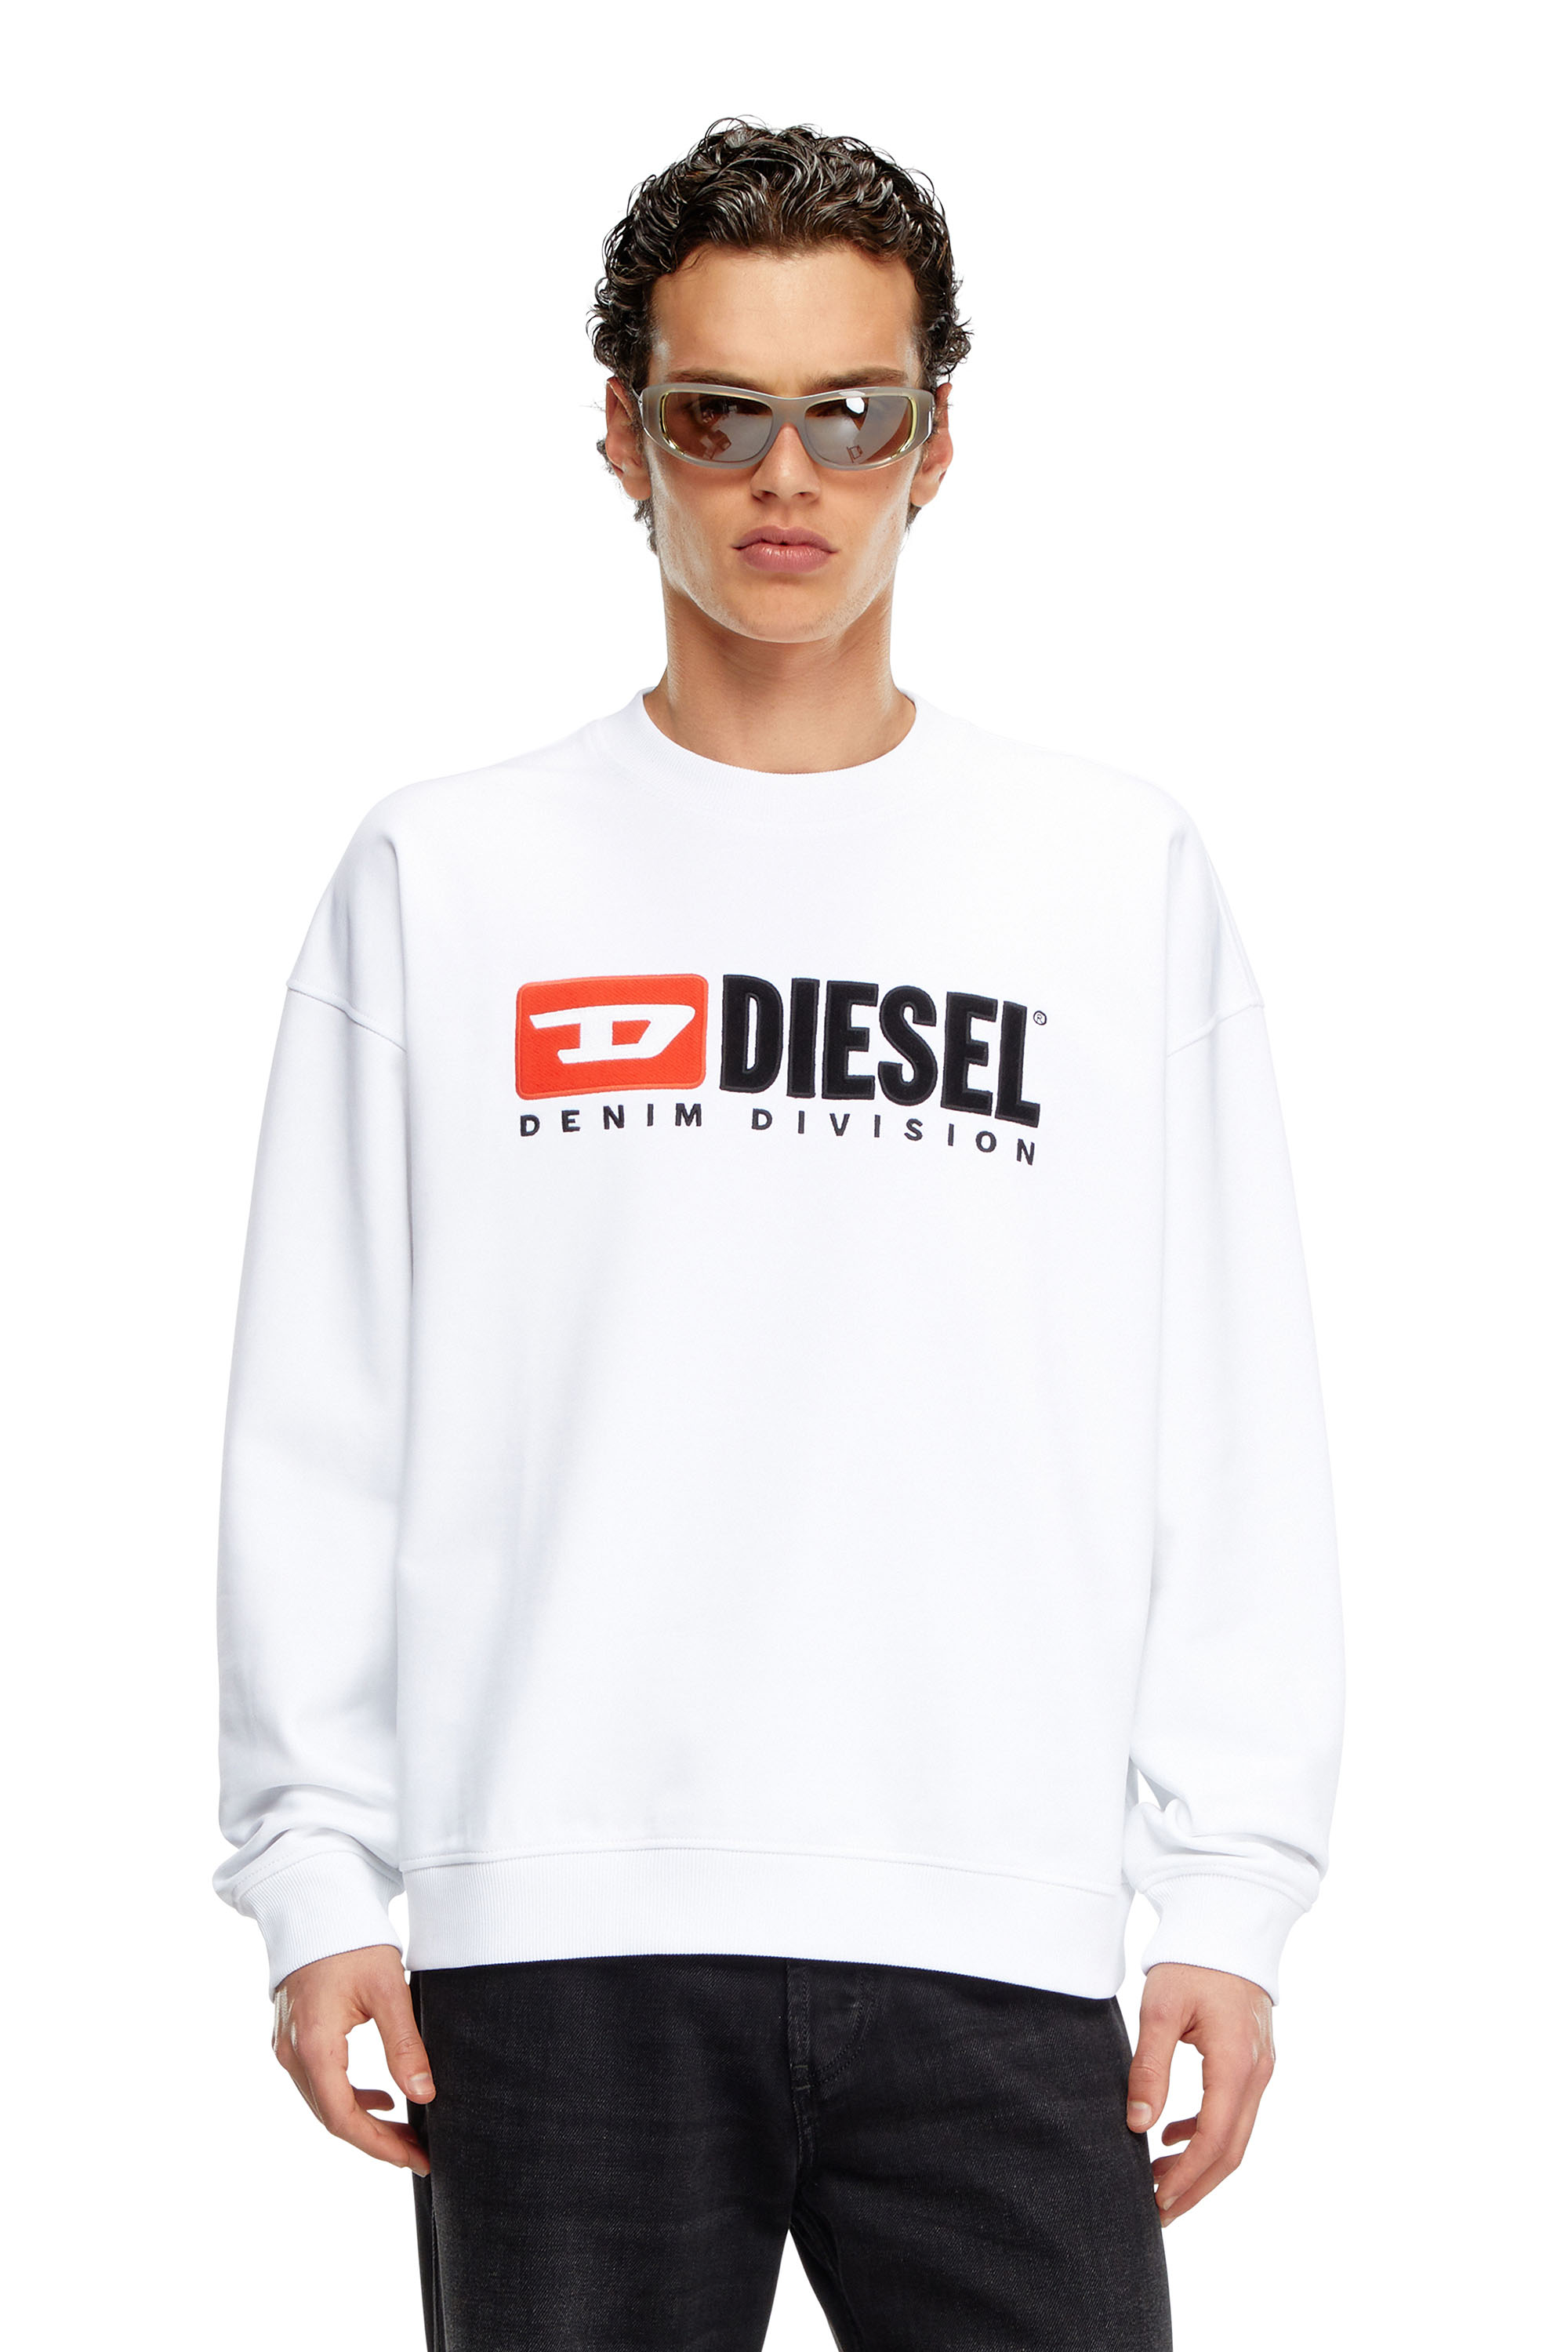 Diesel - S-BOXT-DIV, Uomo Felpa con logo Denim Division in Bianco - Image 1